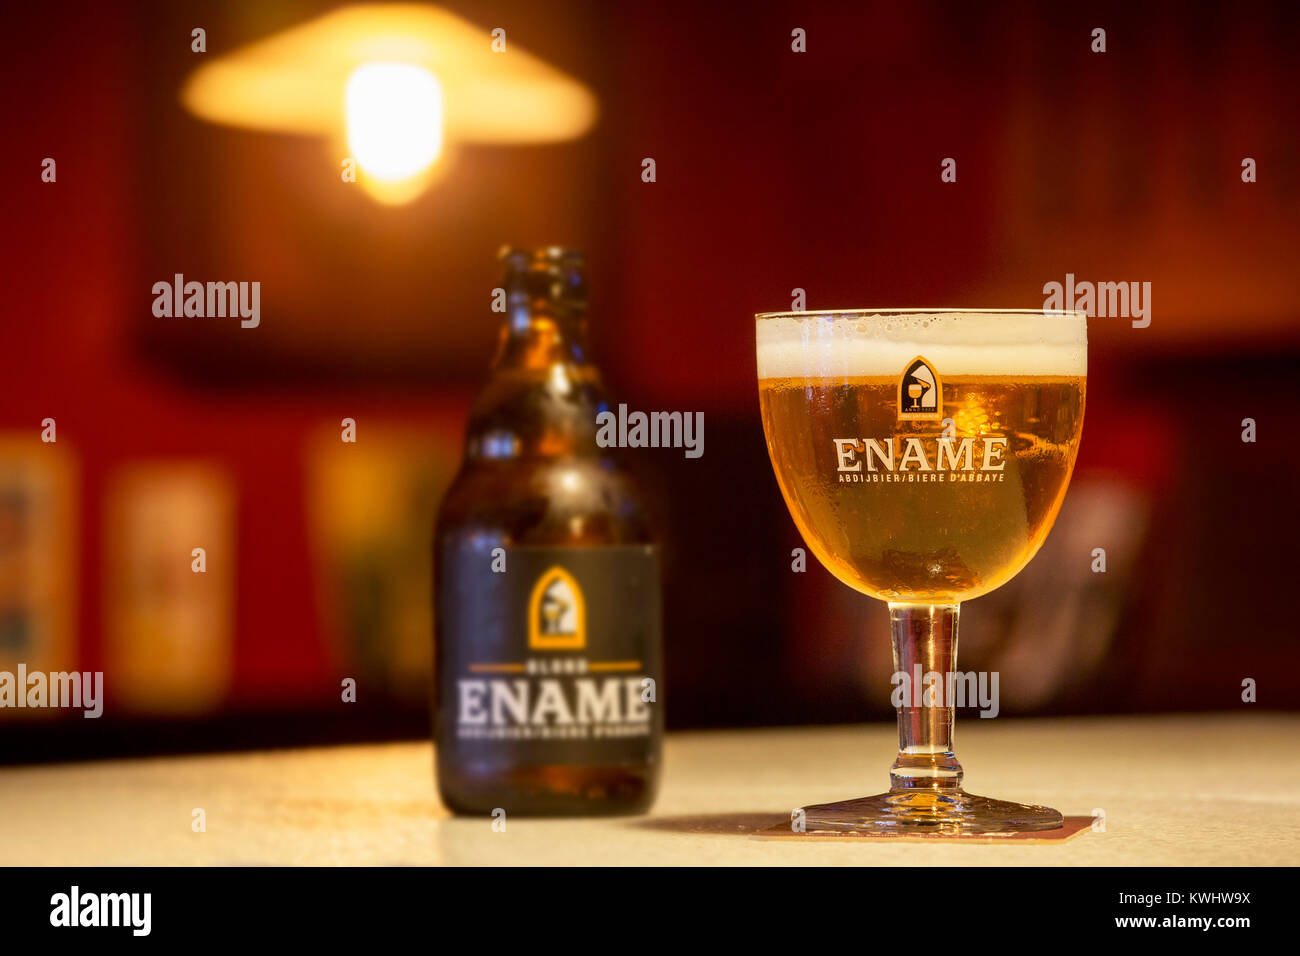 Ename blonde Bier Glas und Bier Flasche, einer der vielen belgischen Abtei Bier in Oudenaarde gebraut, Ostflandern von der Brauerei Roman in Belgien Stockfoto